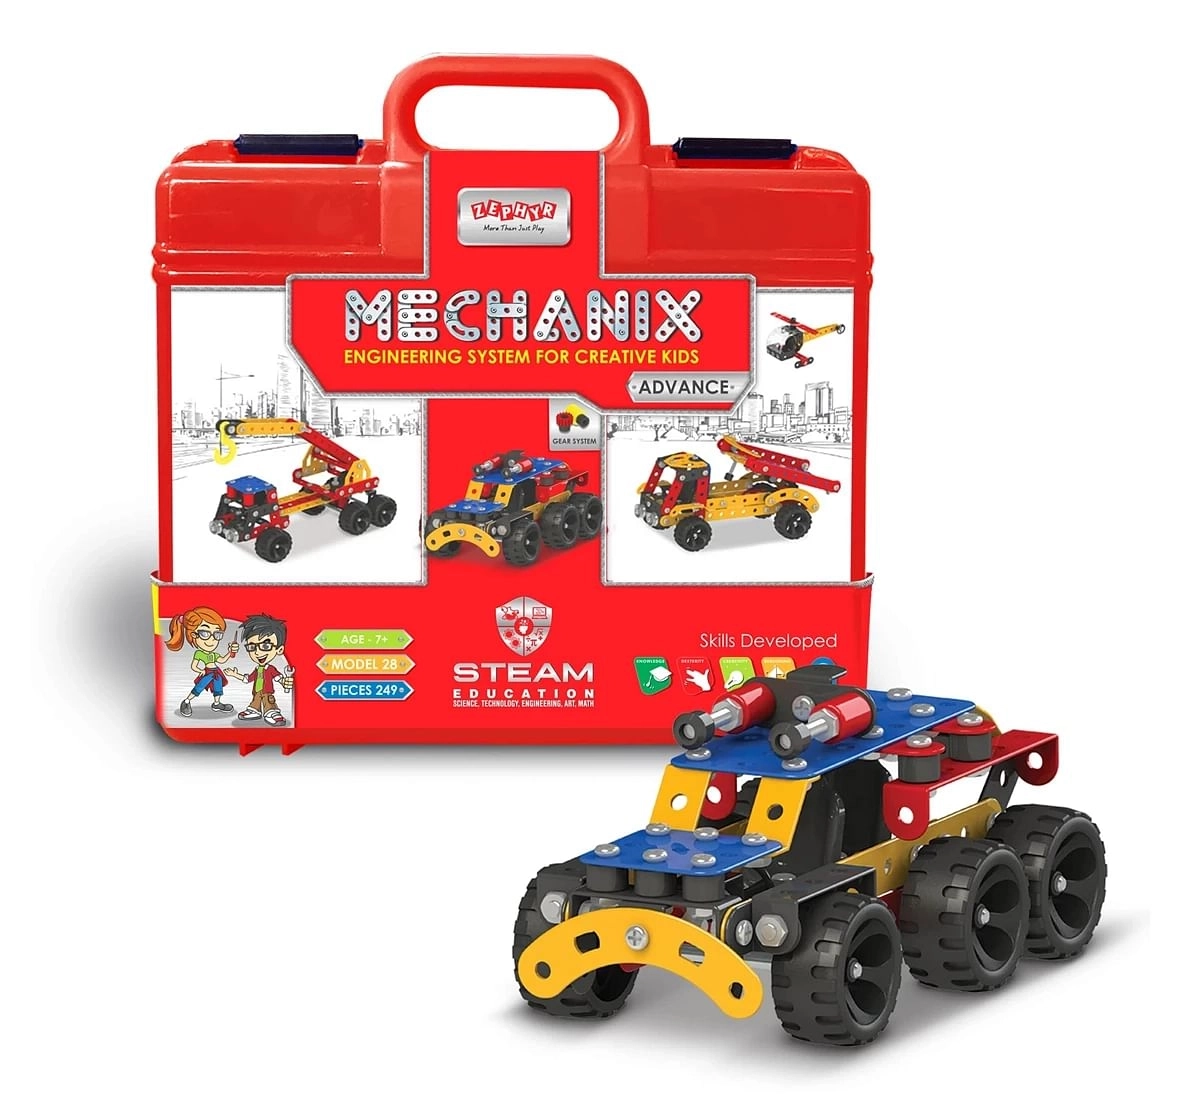 Mechanix Advance Advance Smart Bag, Construction Toy, Building Blocks, Diy Toy - Multicolour, 8Y+